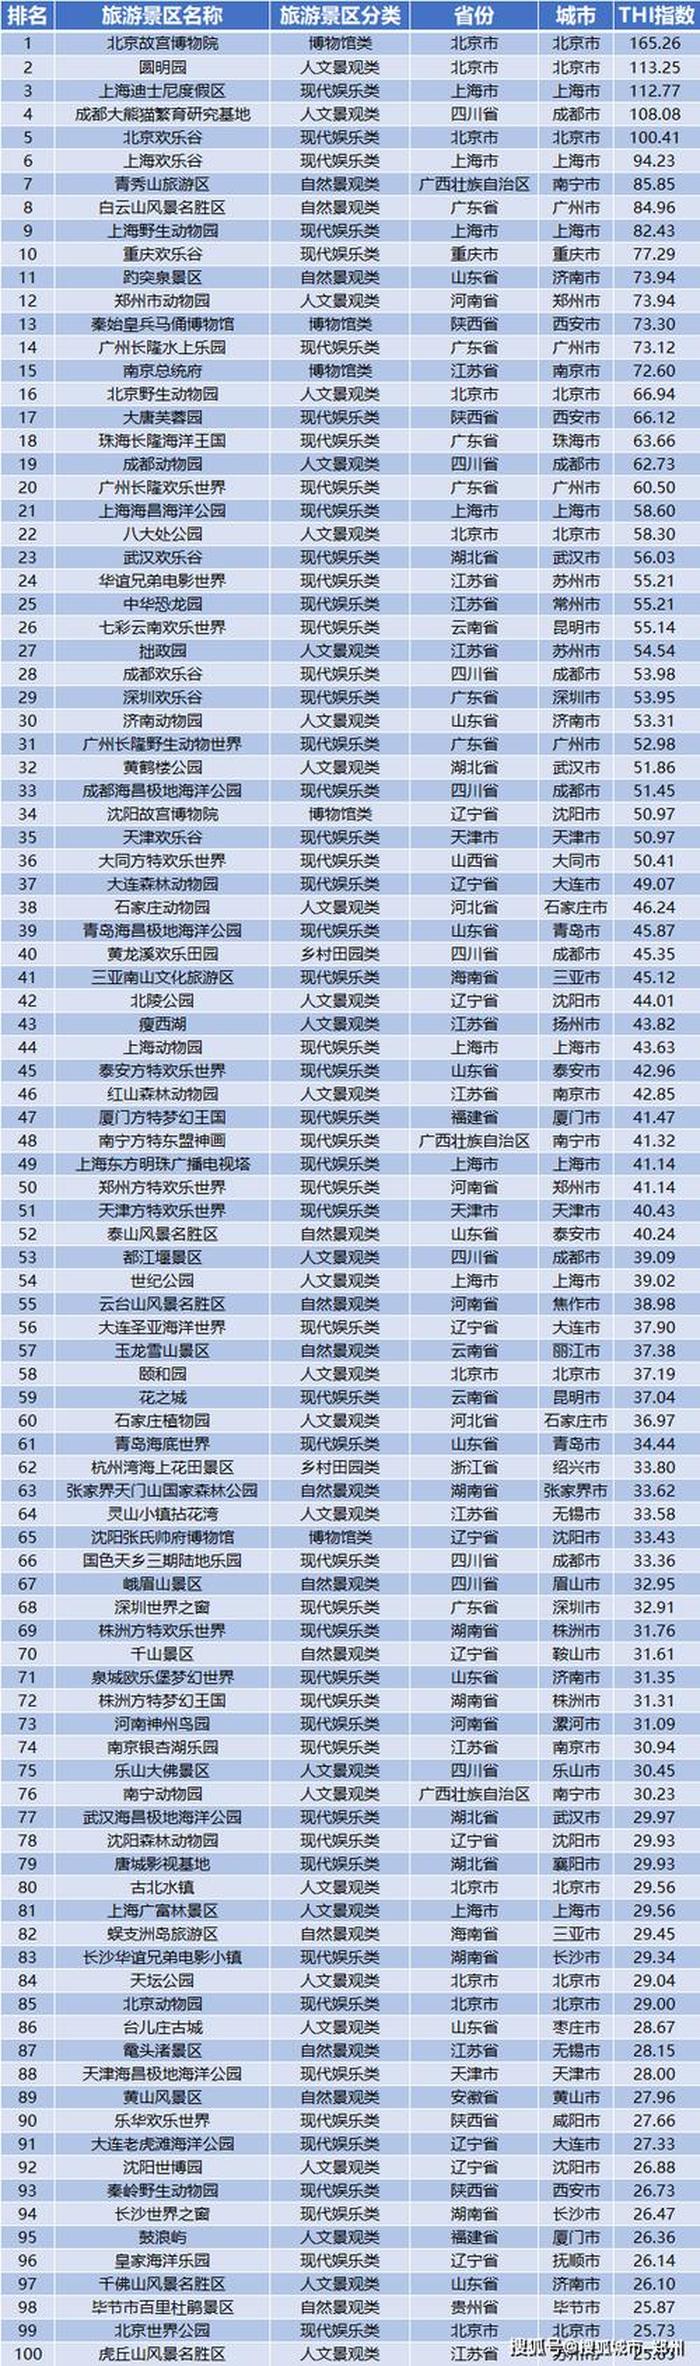 中国景点排名,中国景点排行榜前十名